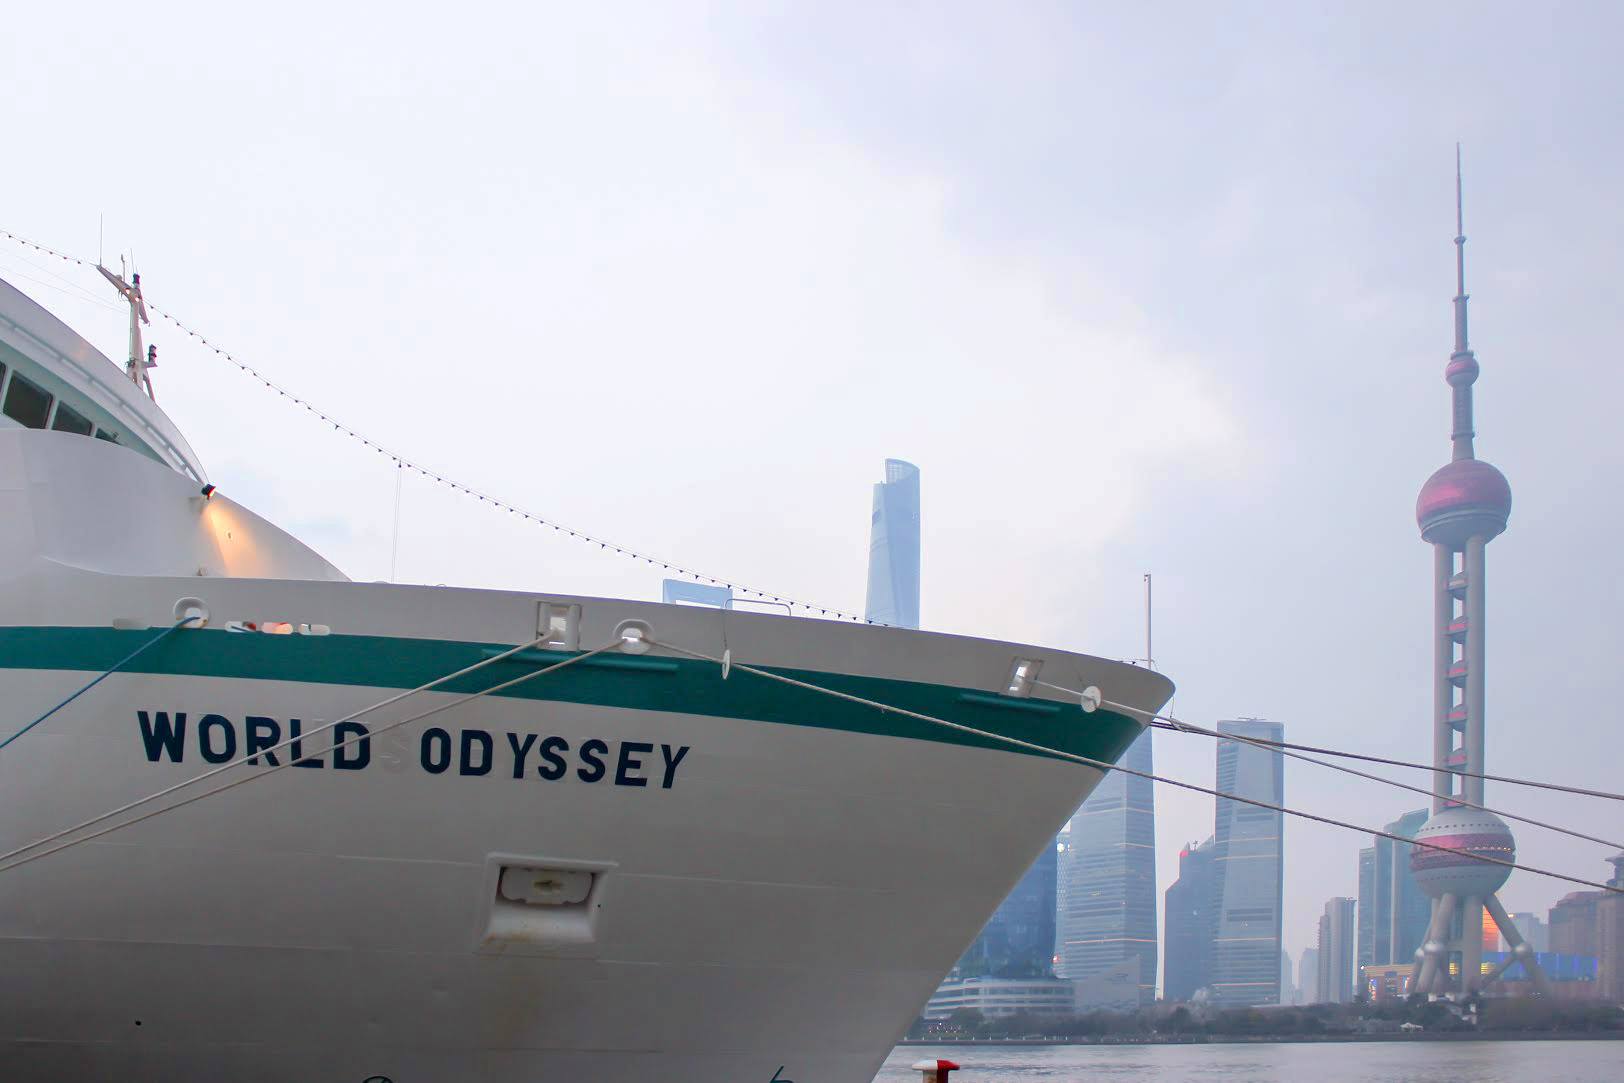 World Odyssey in Shanghai